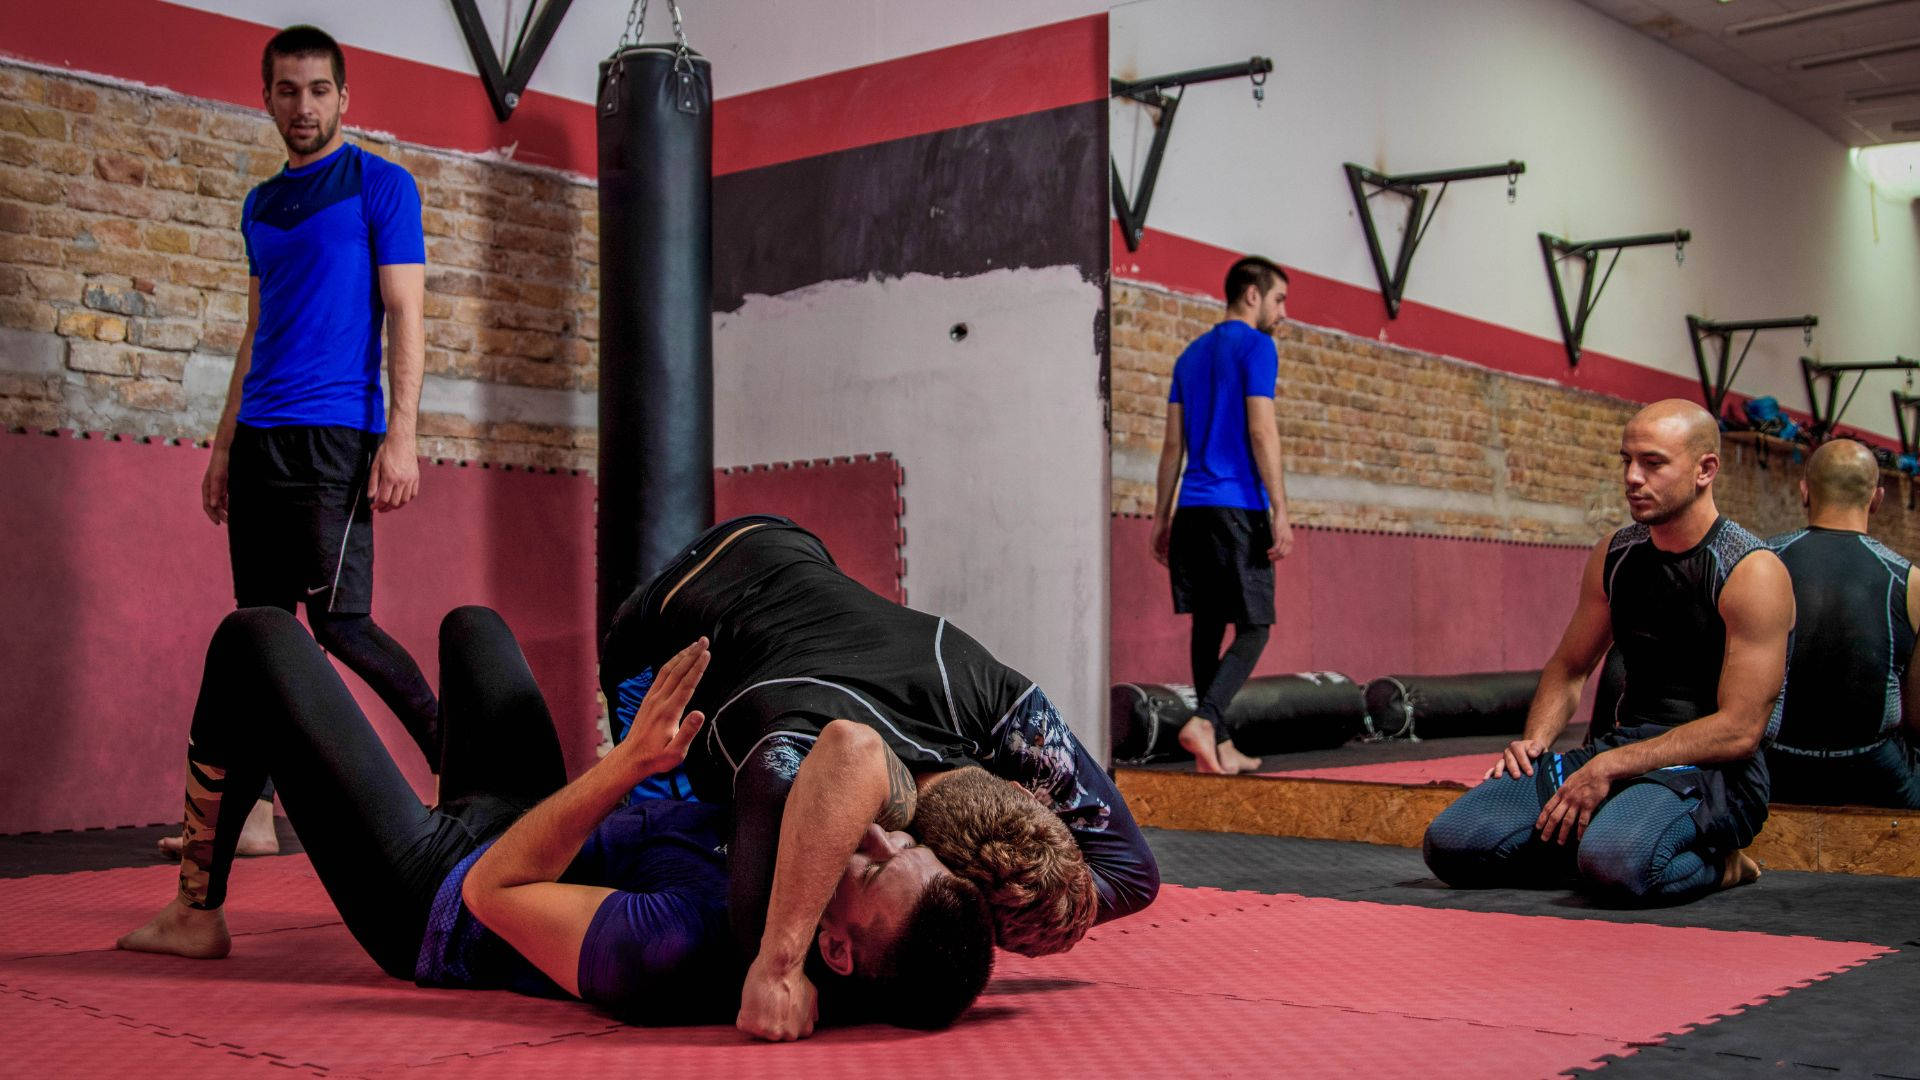 Brazilian Jiu-jitsu Training In Action